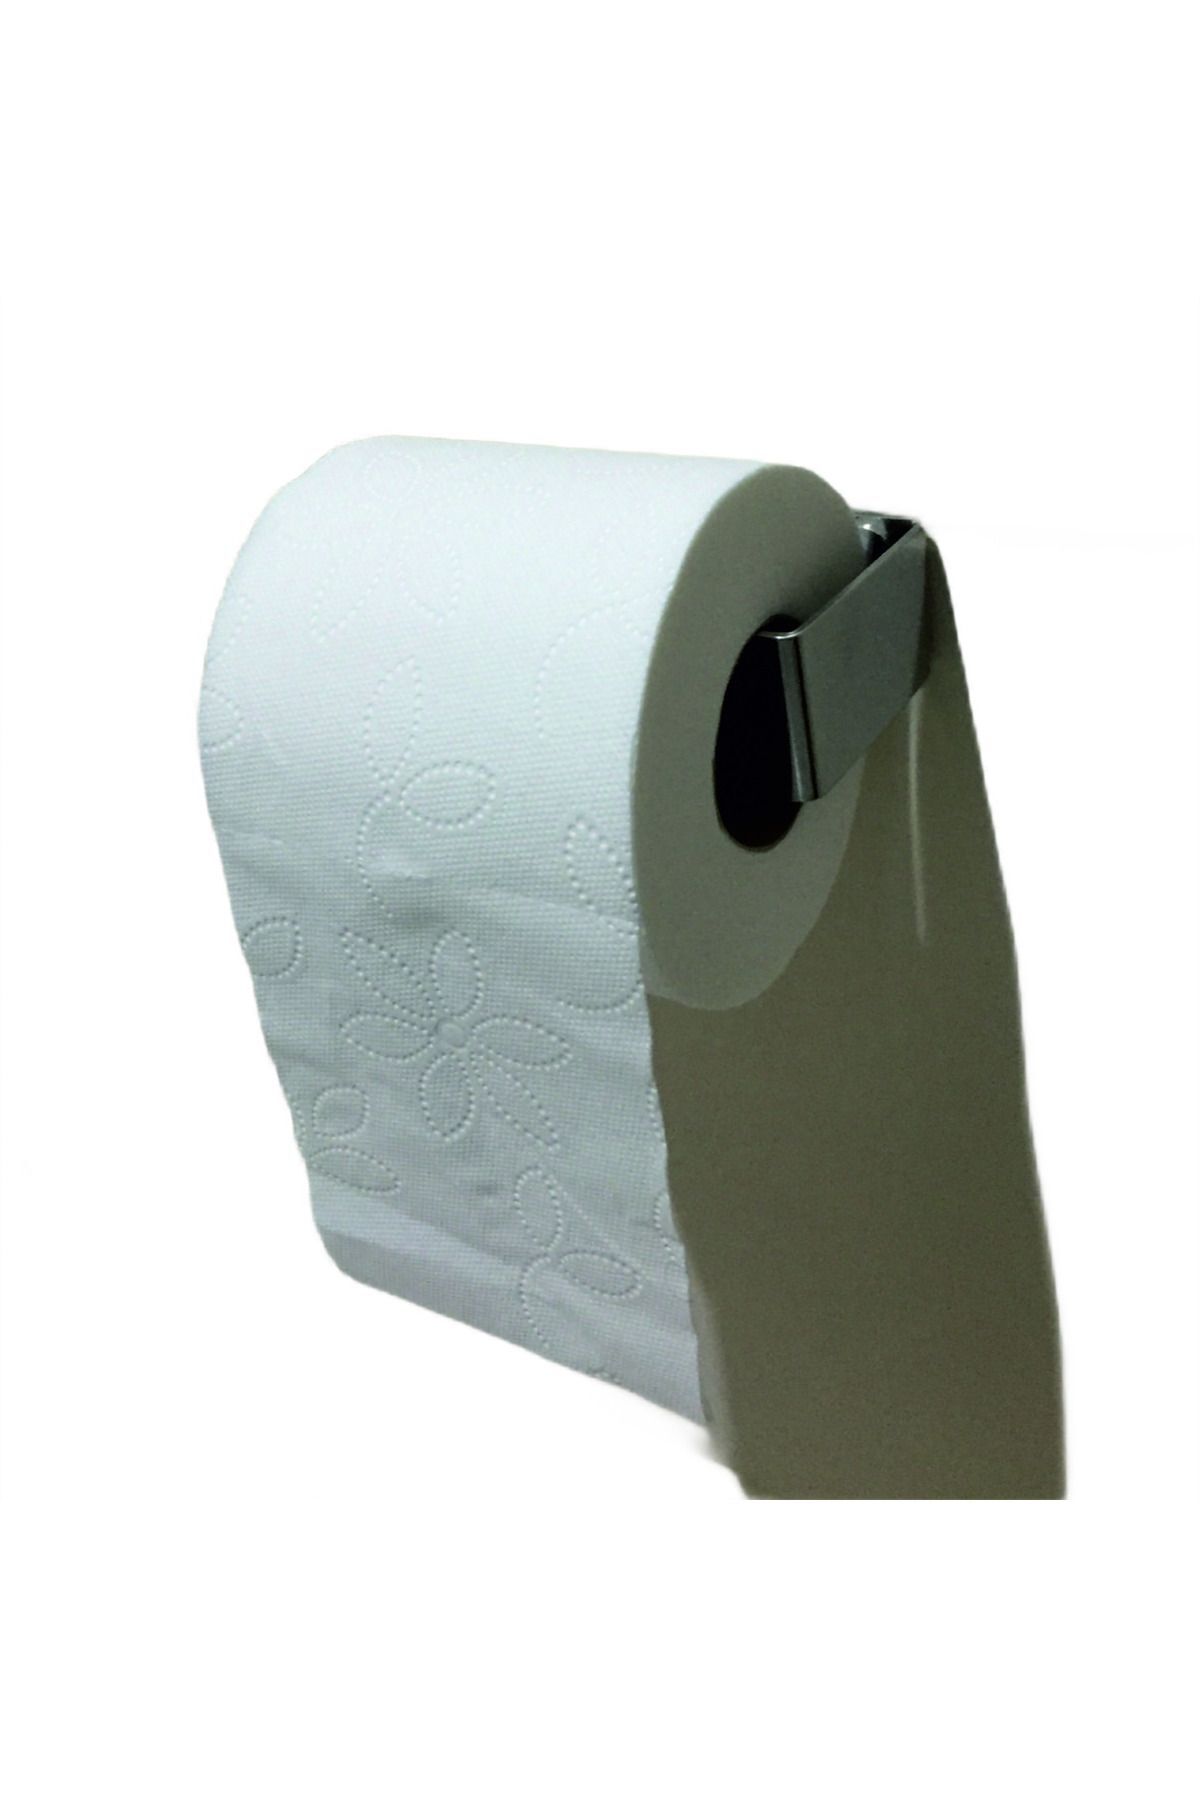 SAKOYA Marin Tk01 Tuvalet Kağıtlığı, Askısı 304 Kalite Paslanmaz Krom 7 11 2 ,5 X 3,5 Cm